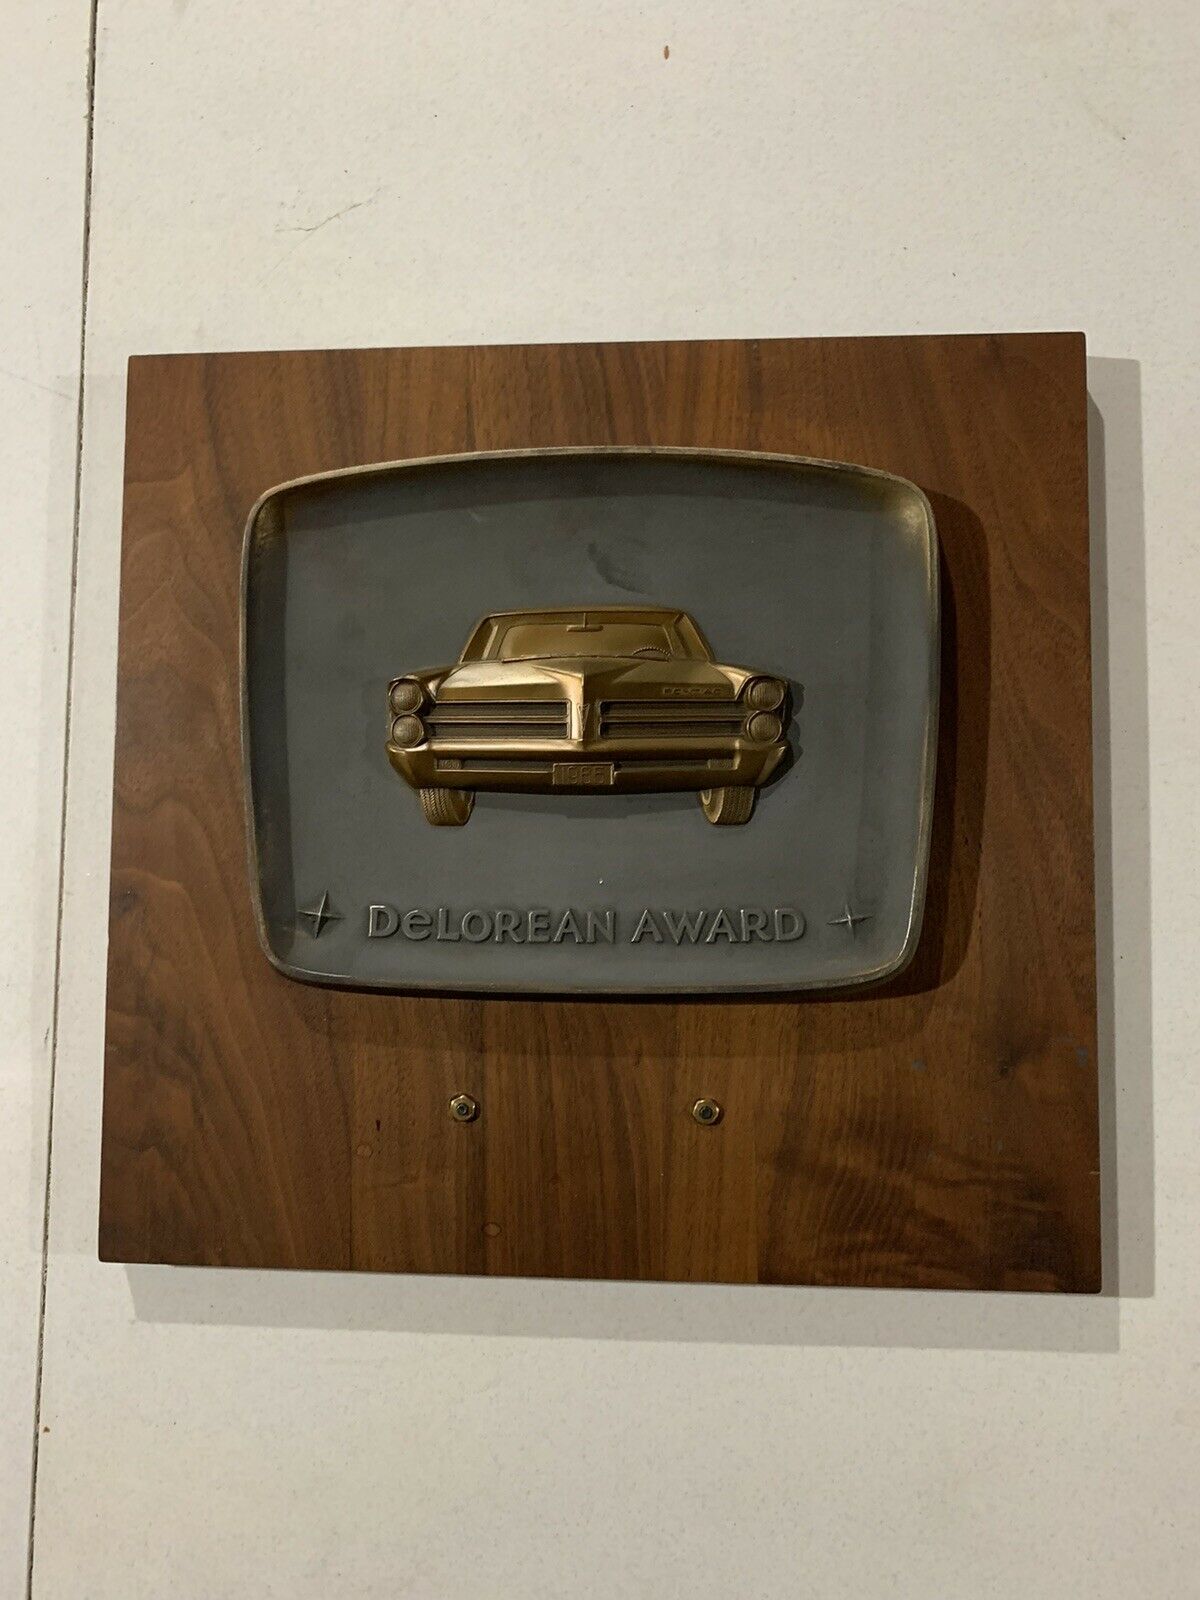 1965 Pontiac Gto Delorean Sales Awards Plaque